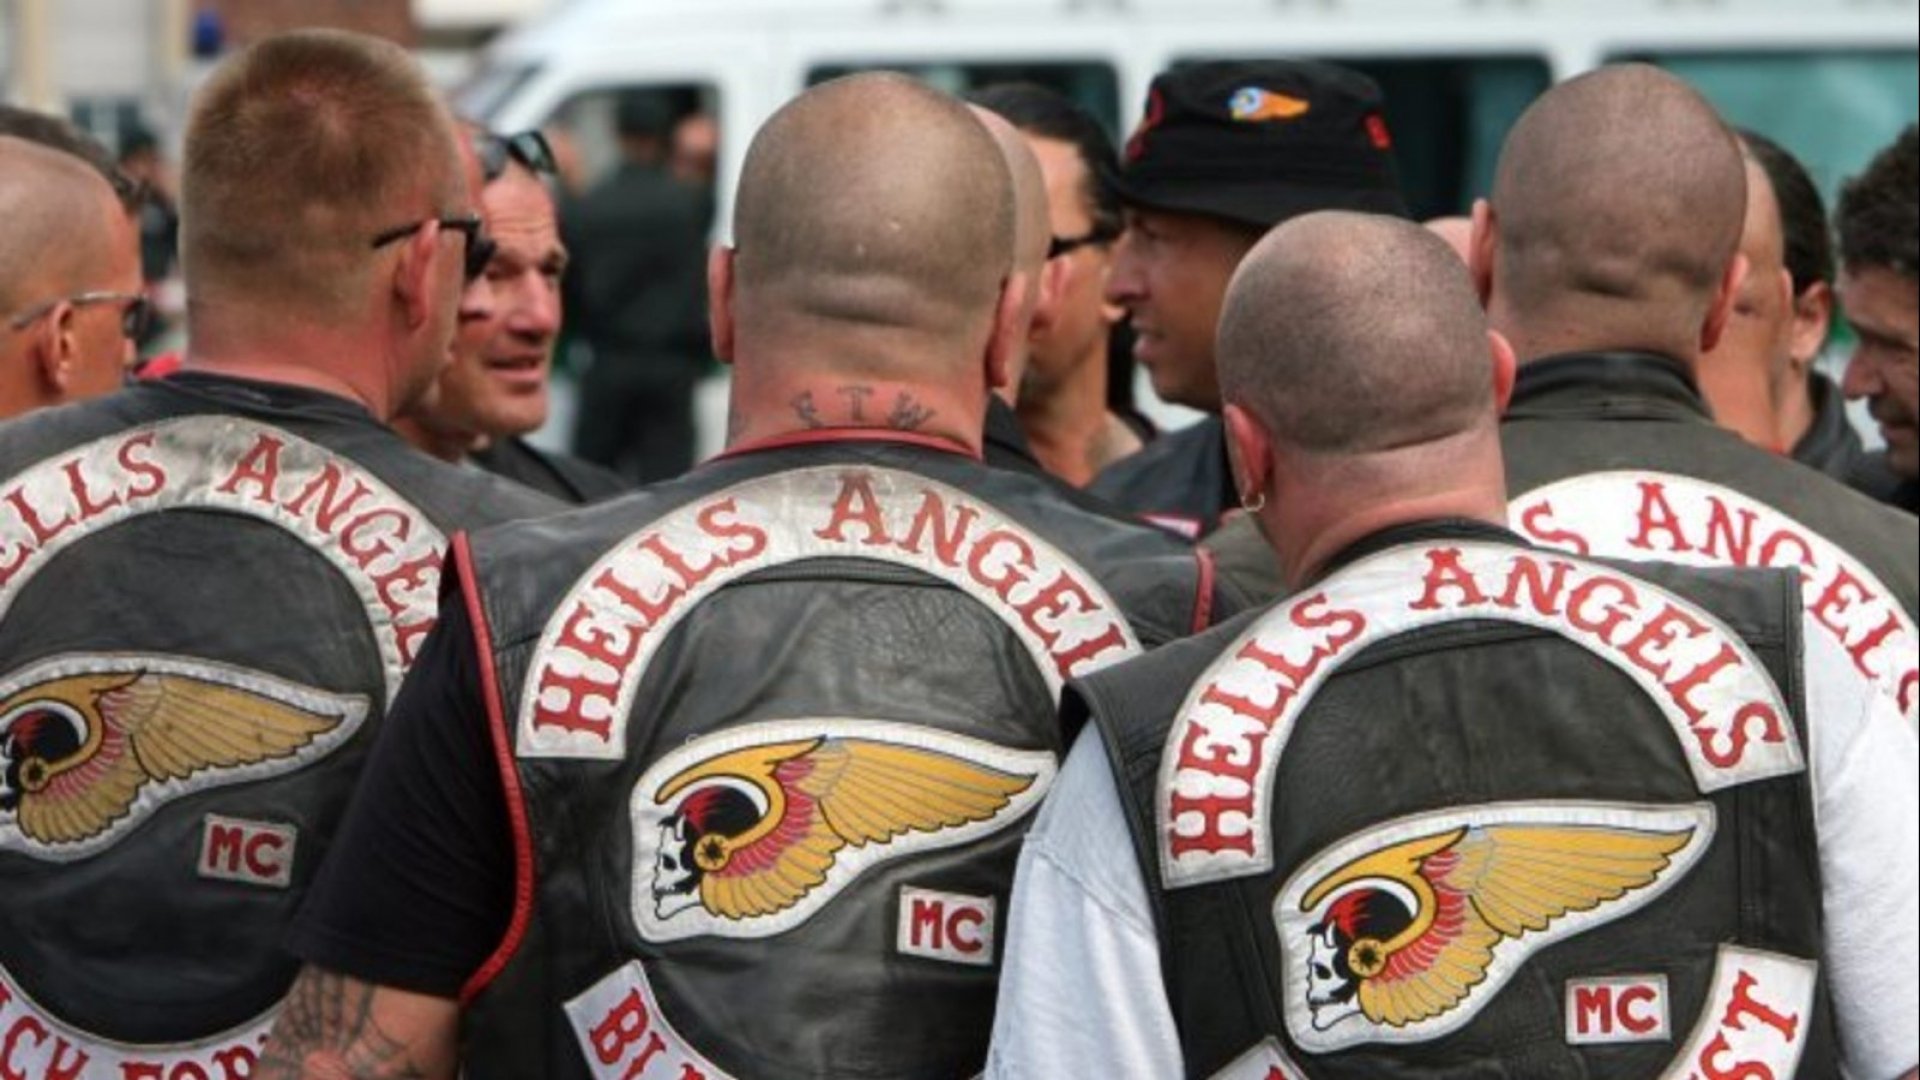 hells angels, Hamc, Biker, Hells, Angels, Motorbike, Motorcycle, Bike ...